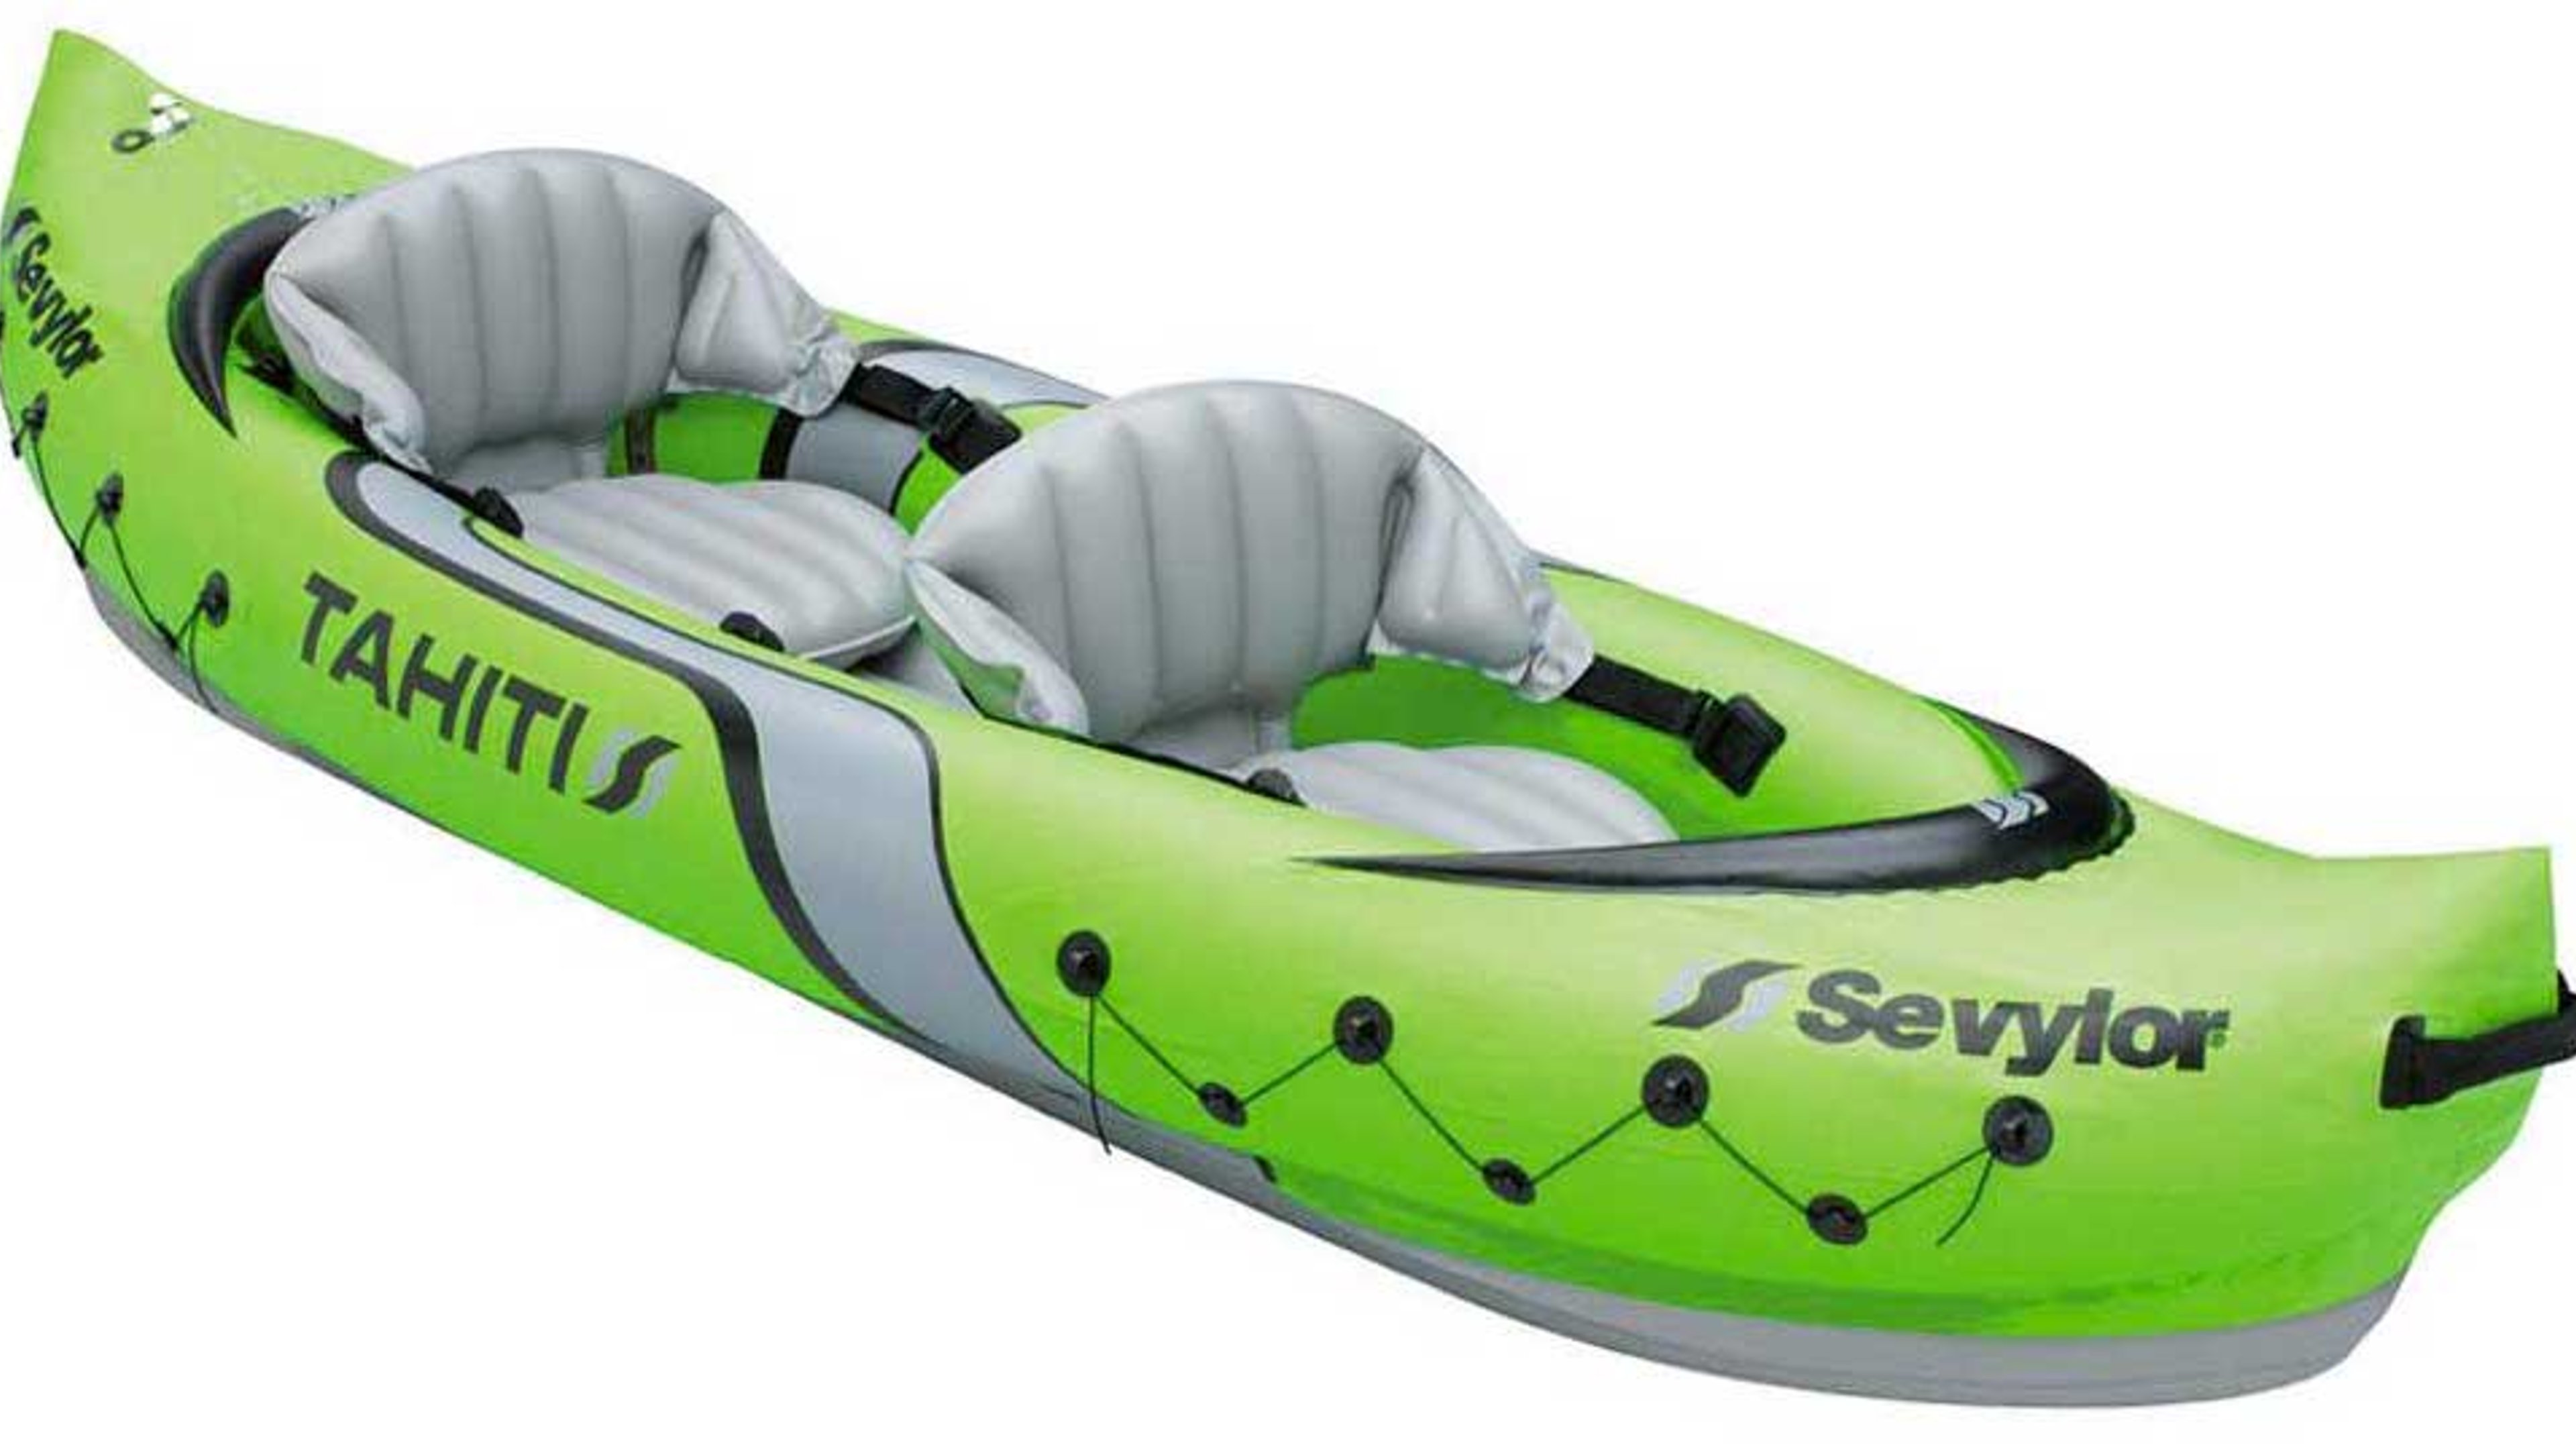 Sevylor Tahiti Inflatable Kayak